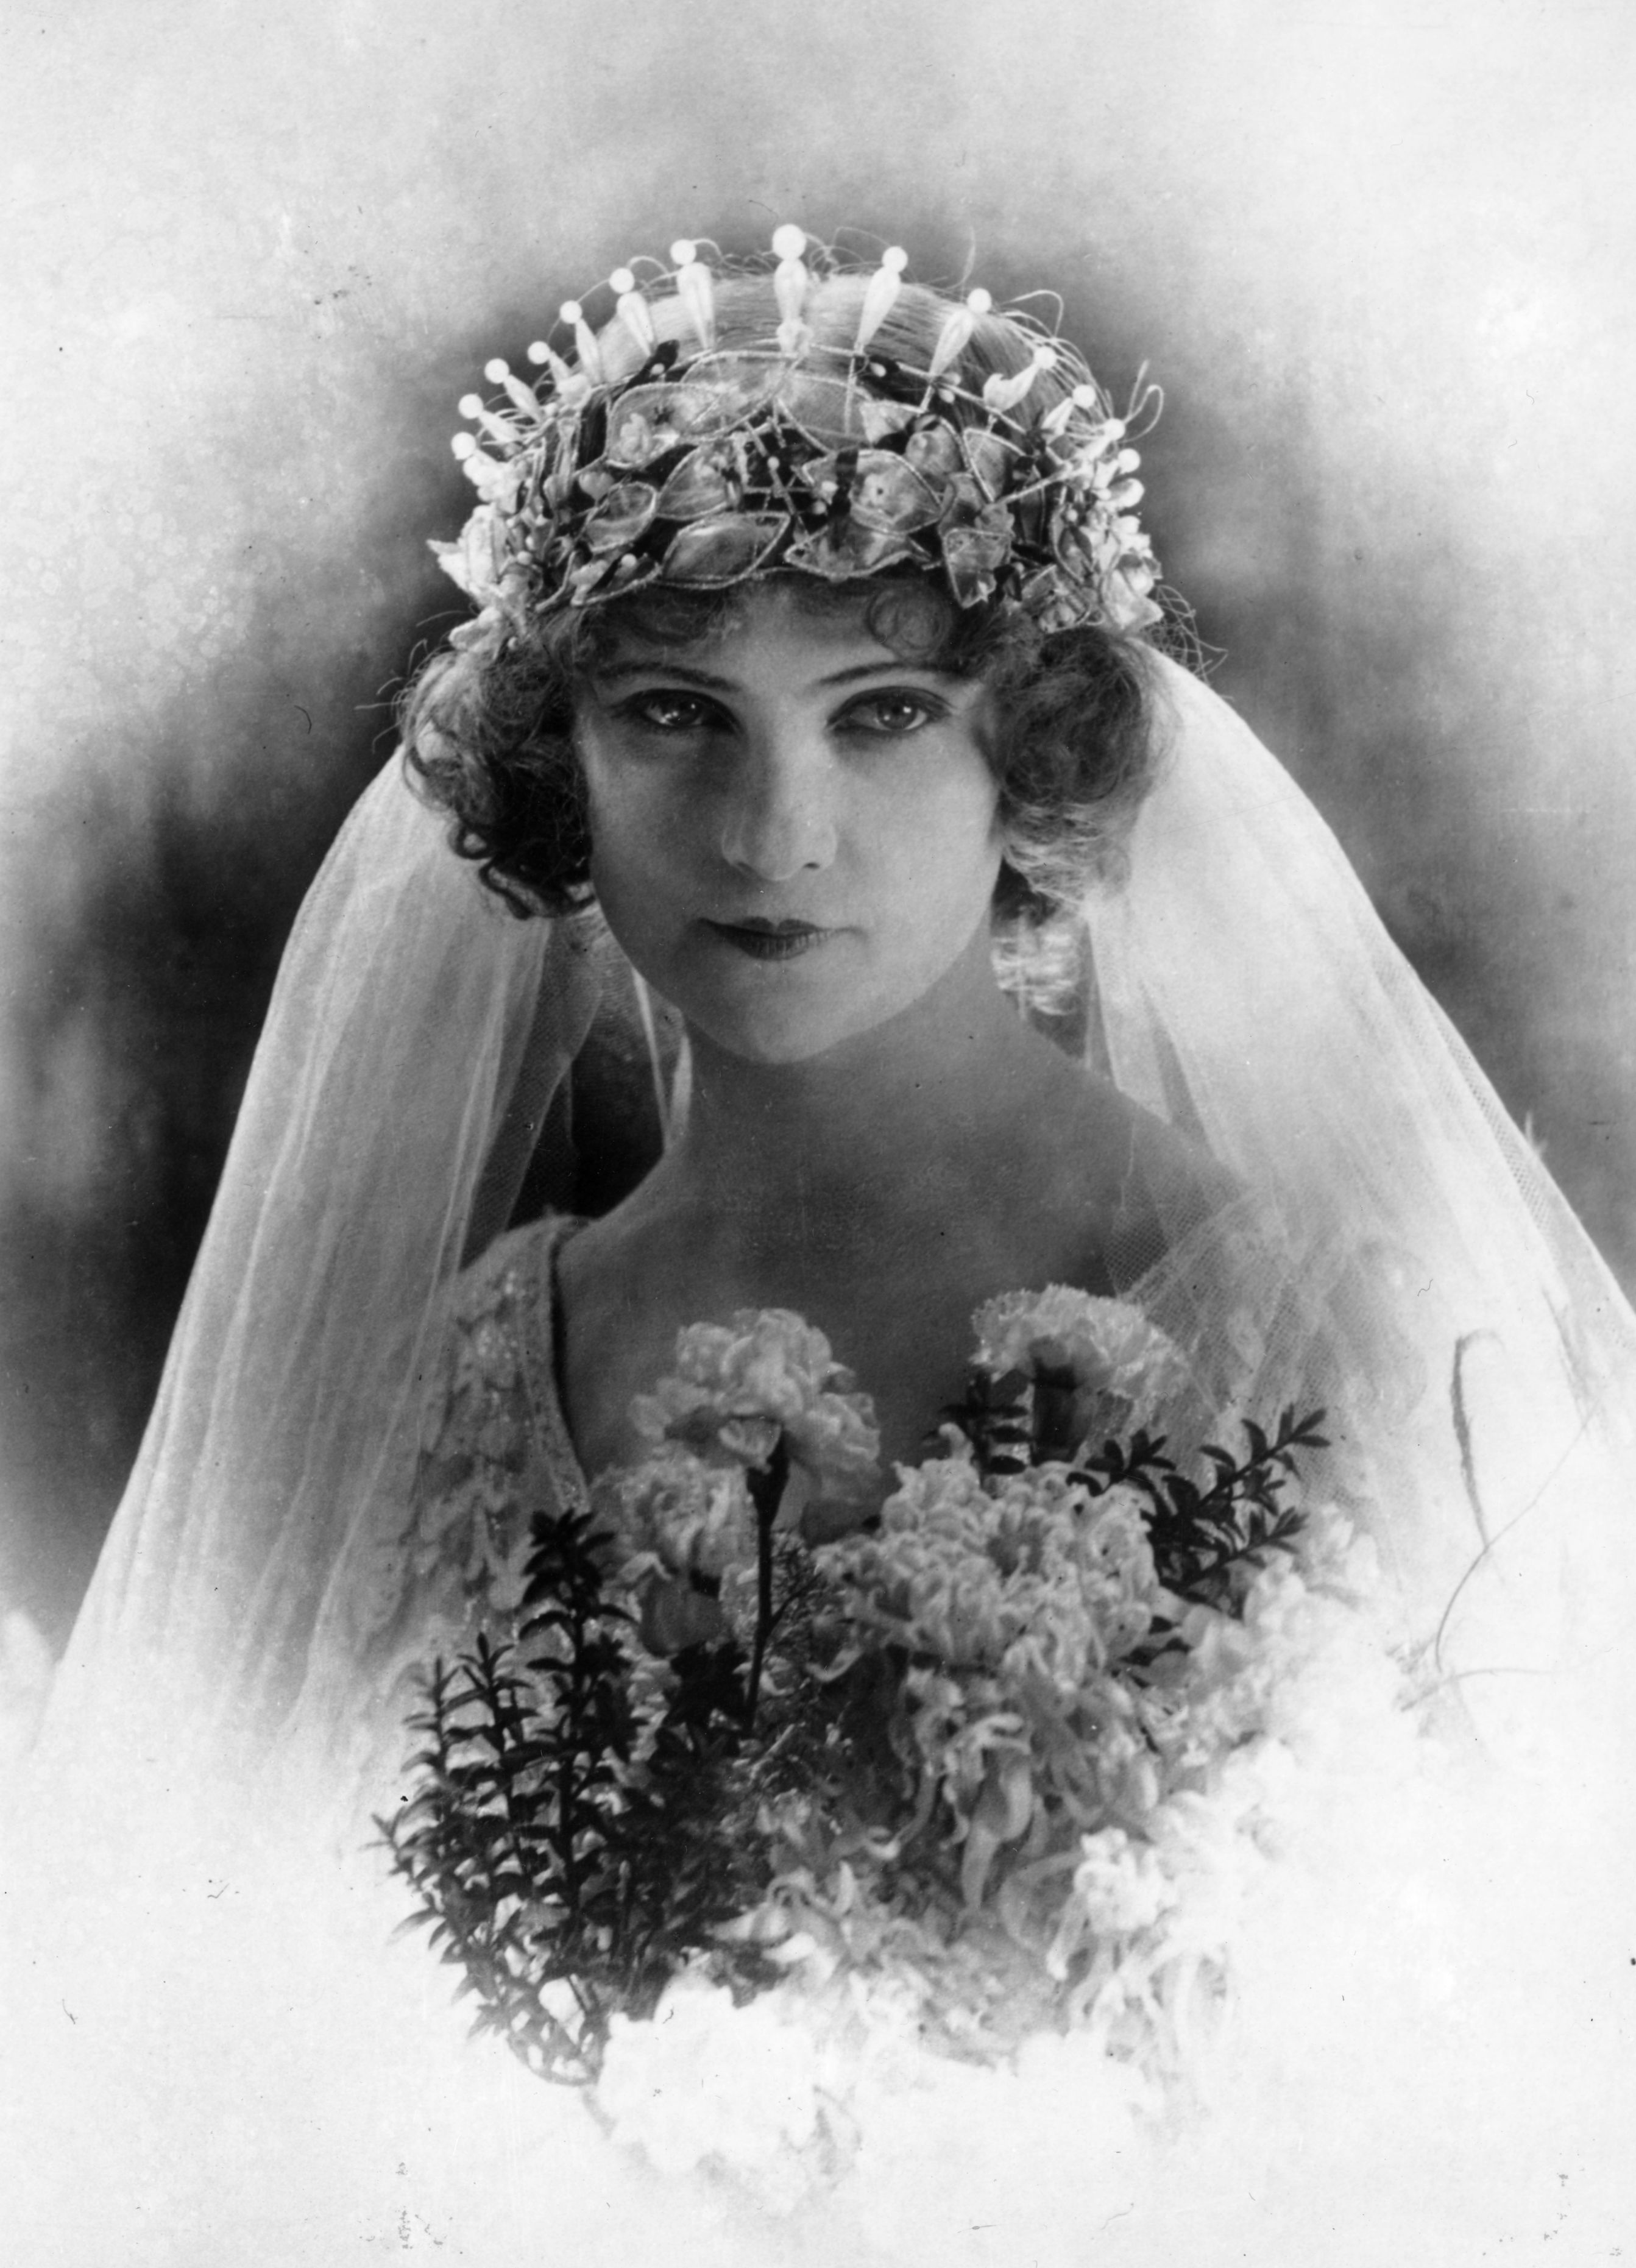 Vintage Black and White Photo Bride Bridal Lace Dress Gloves Bouquet Tiara Veil